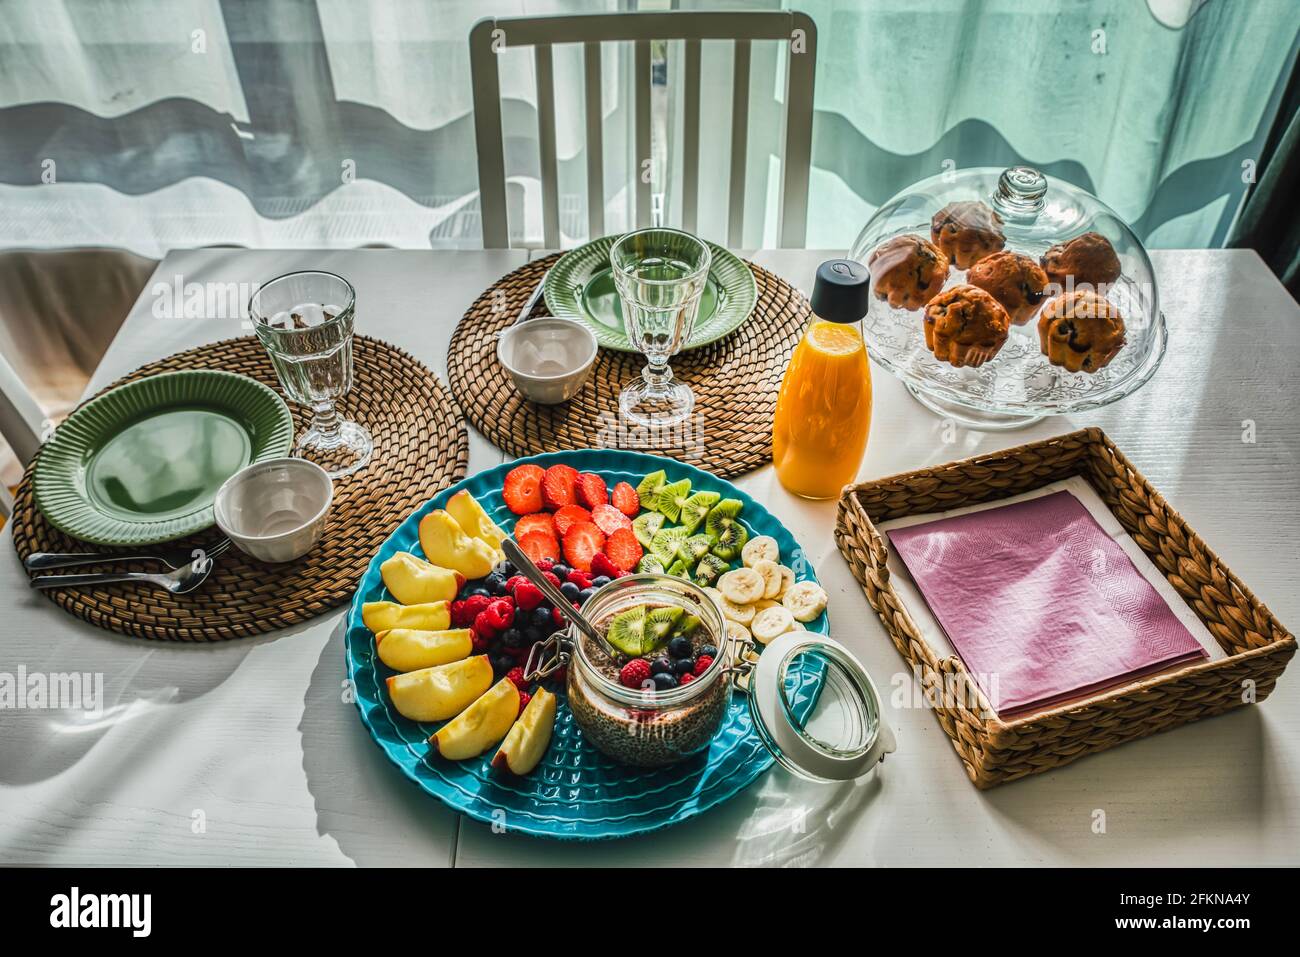 Détail des repas continentaux ou petit déjeuner ou en-cas méditerranéens avec des muffins bio et des fruits de saison sur une table en bois blanc avec des tapis rustiques Banque D'Images